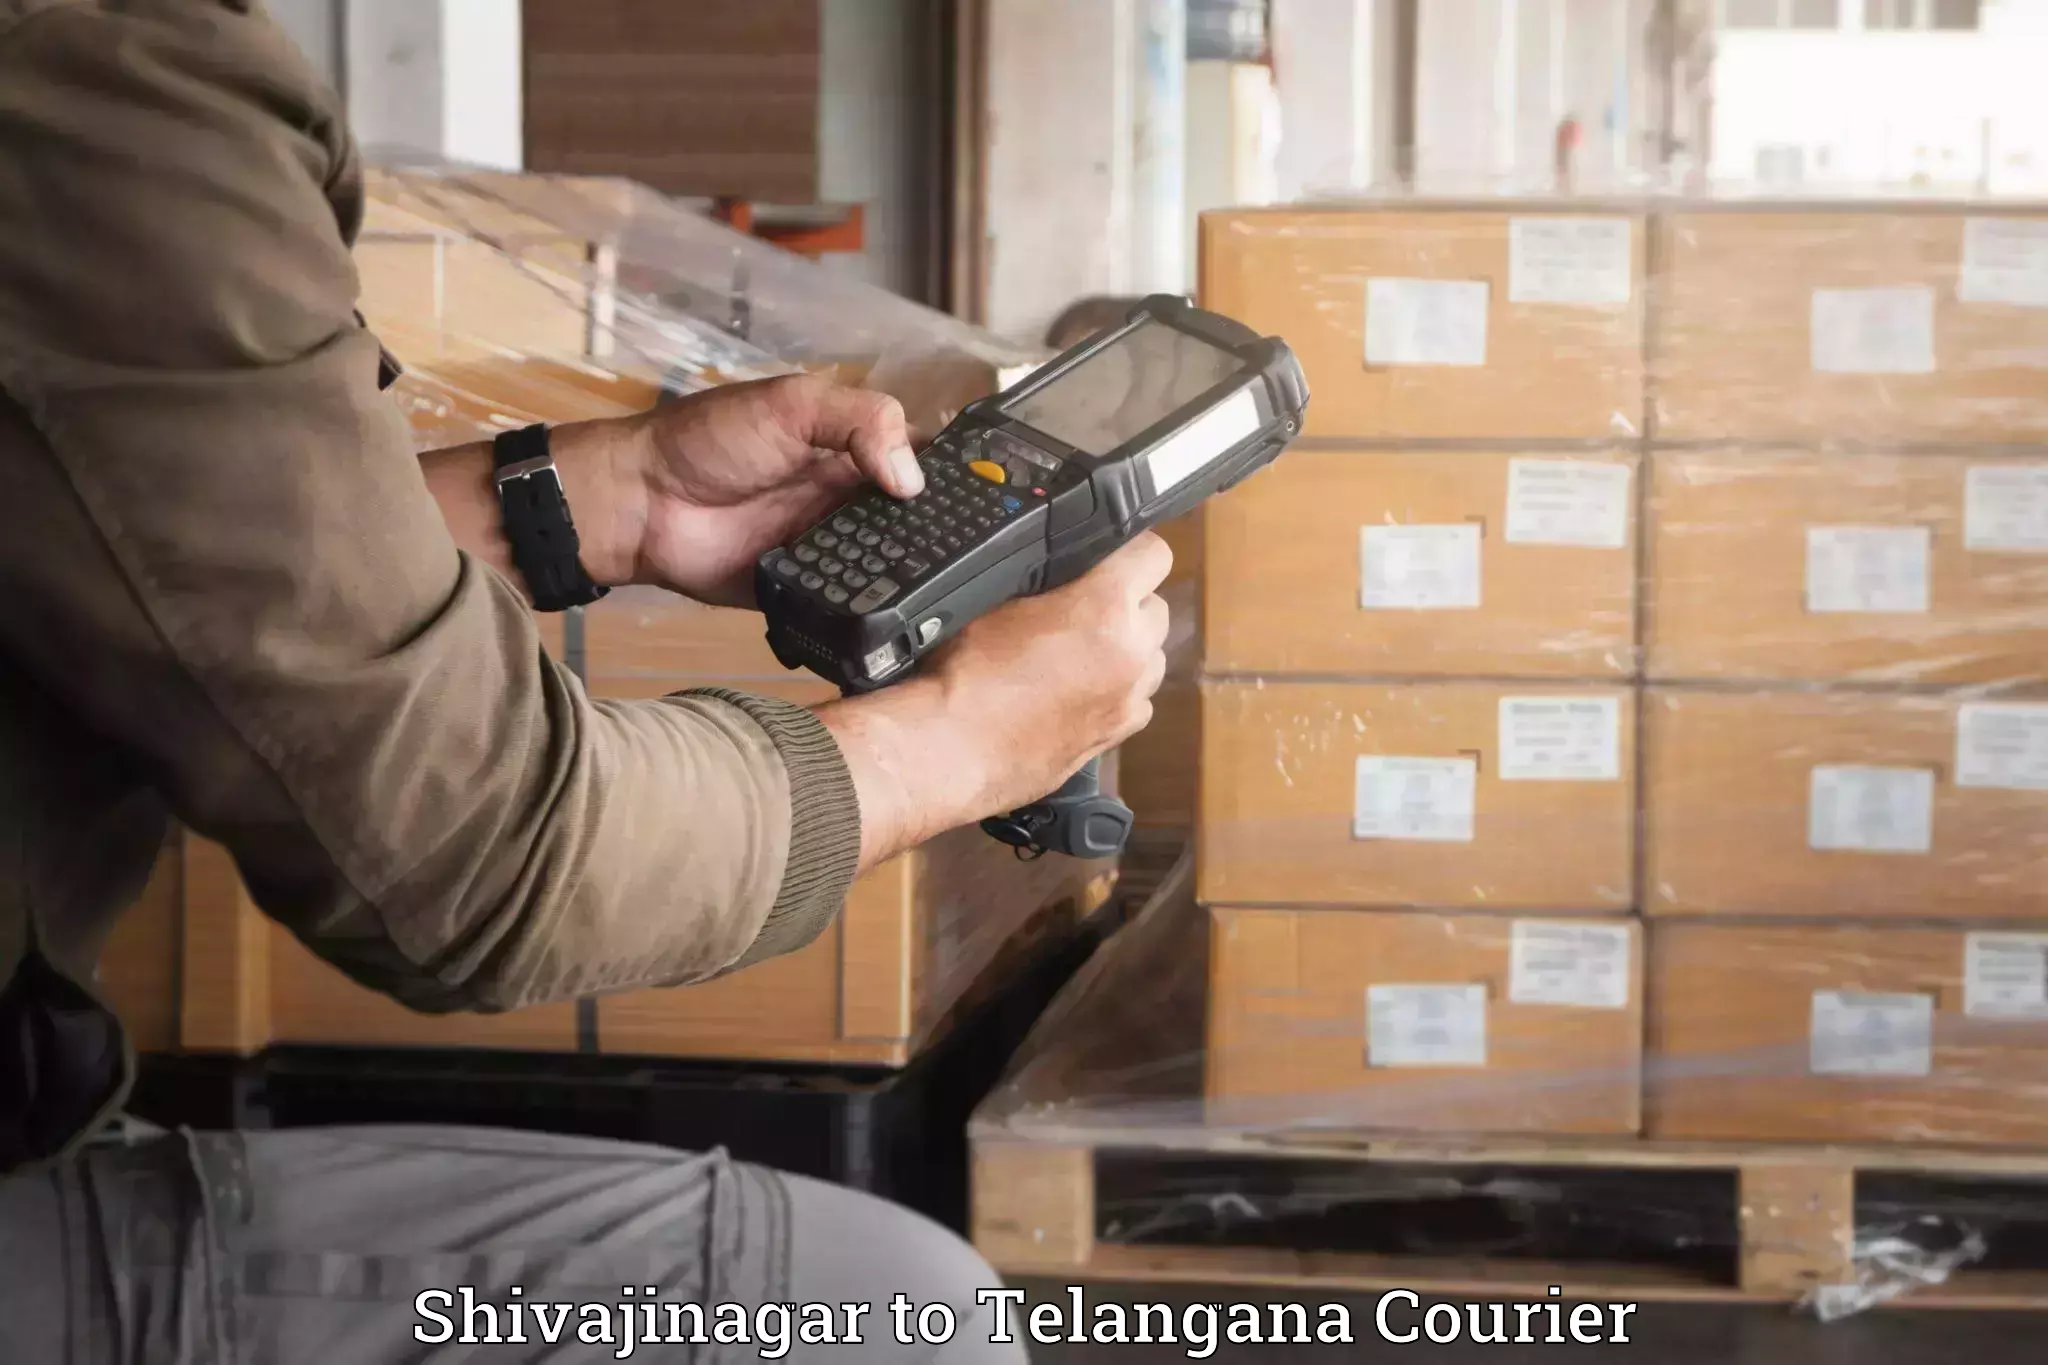 Luggage delivery network Shivajinagar to Telangana